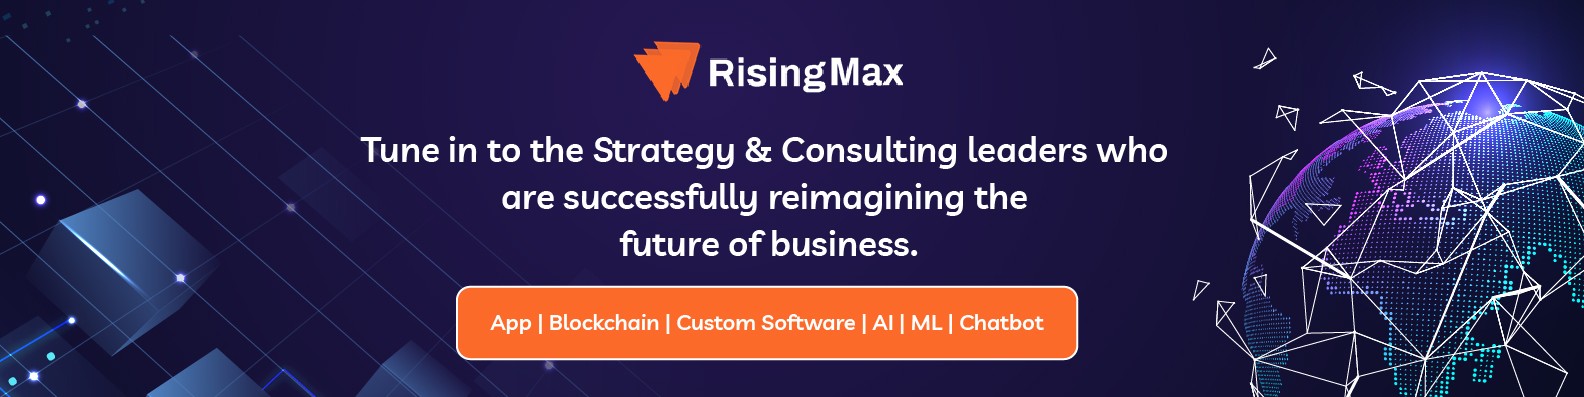 RisingMax Inc | LinkedIn